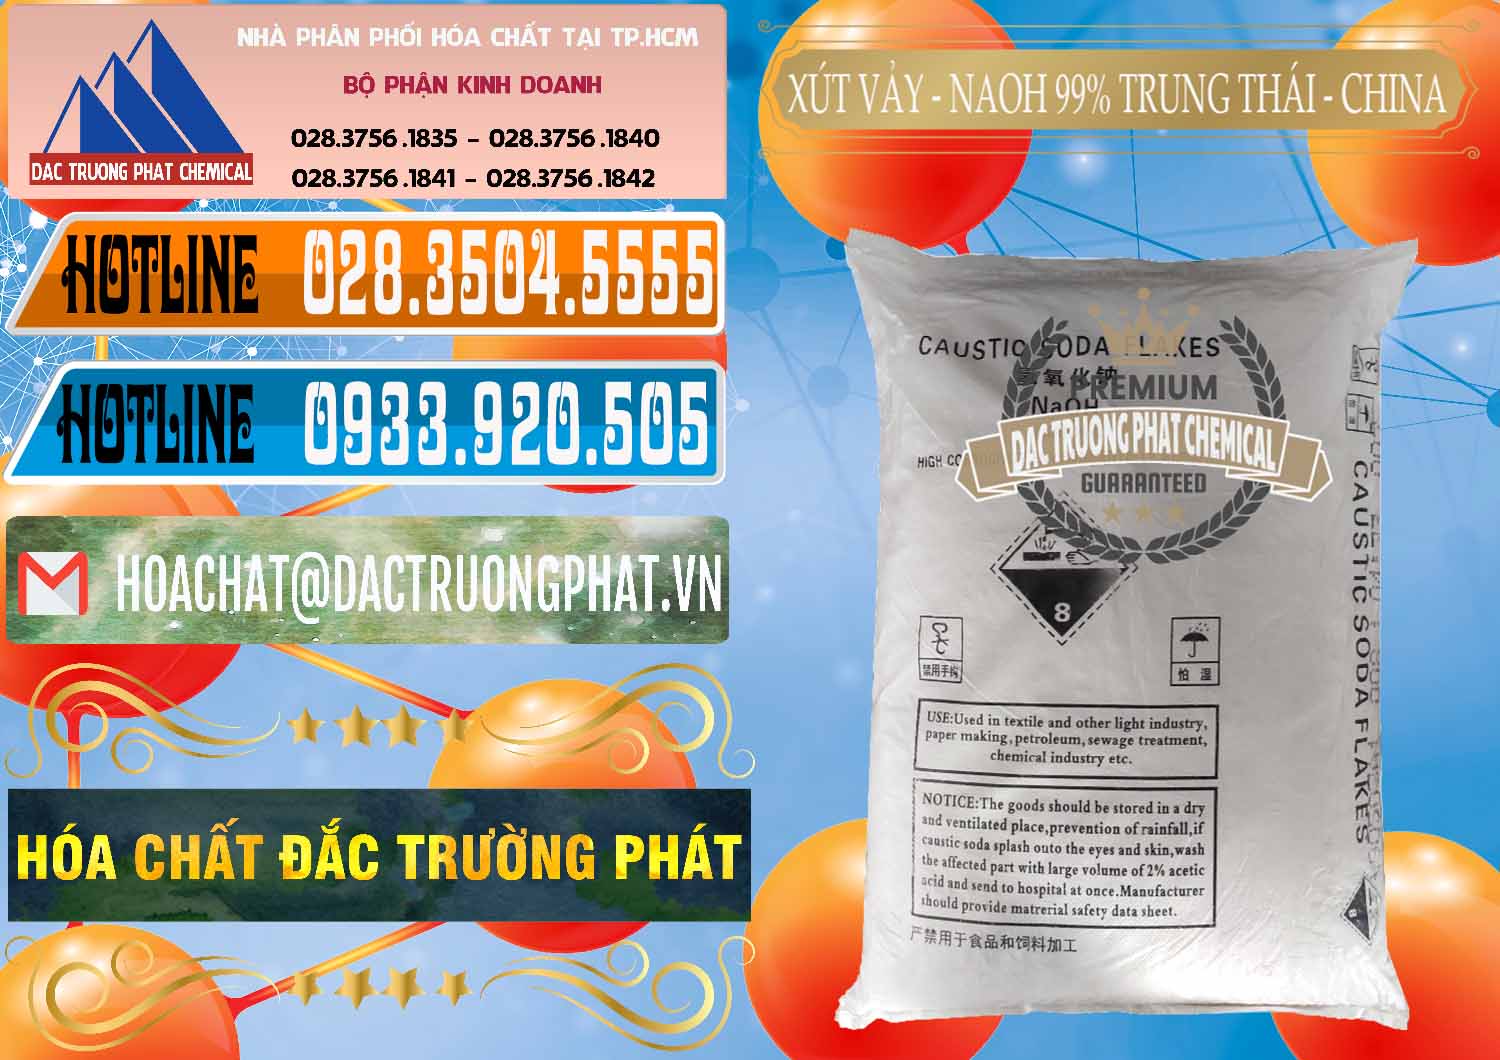 Cty chuyên cung cấp ( bán ) Xút Vảy - NaOH Vảy 99% Trung Thái China Trung Quốc - 0176 - Cty bán & phân phối hóa chất tại TP.HCM - stmp.net